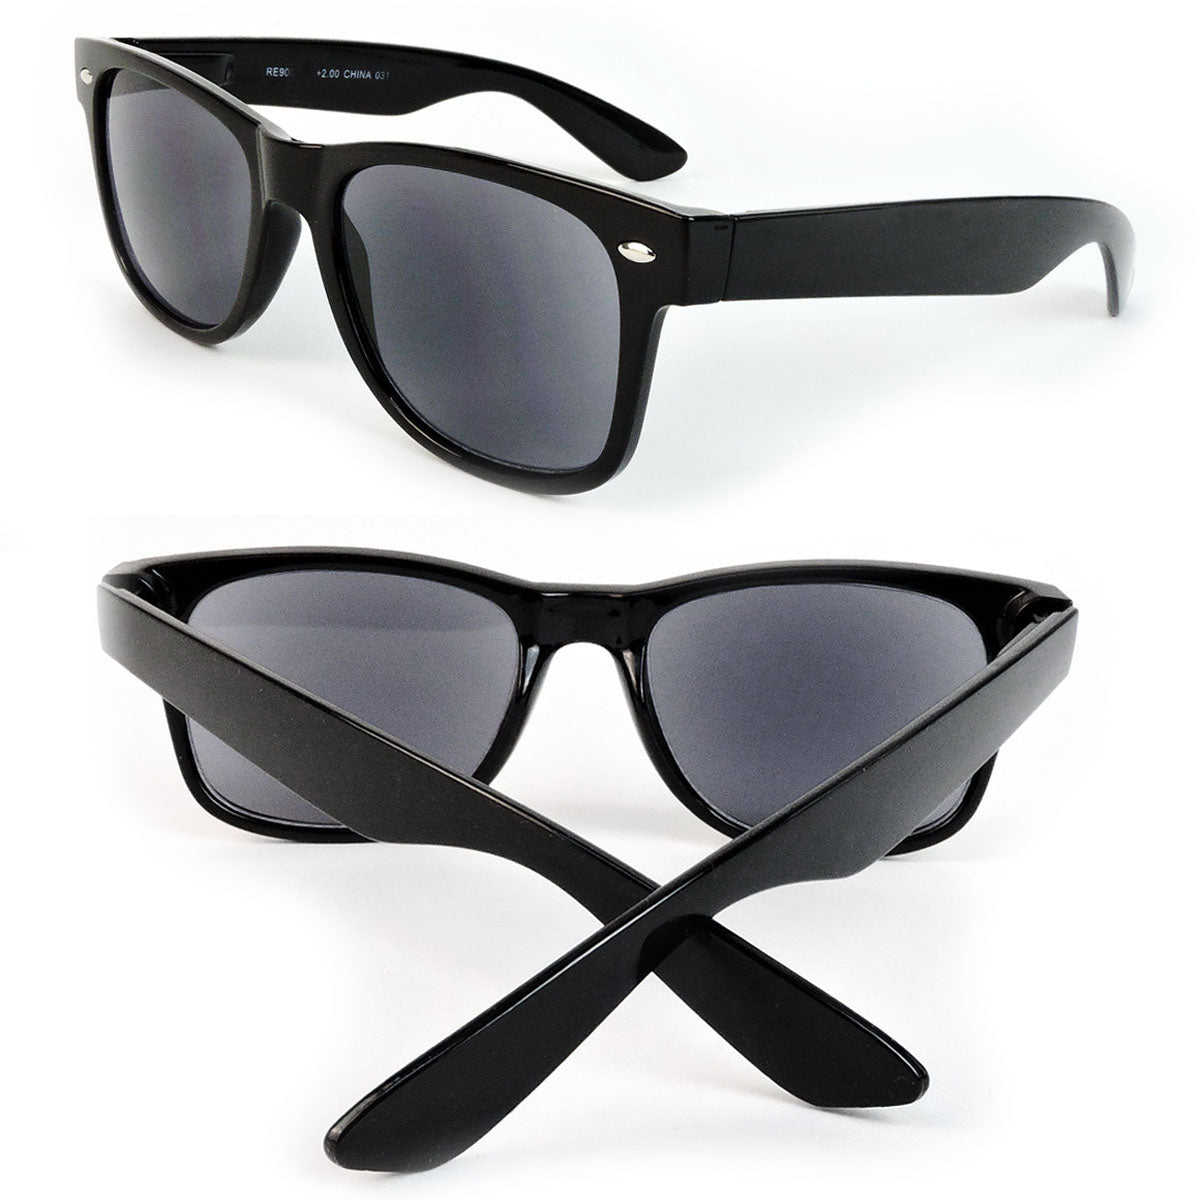 Sun Readers Full Lens Classic Frame 80's Retro Style Reading Sunglasses - Black, +1.50